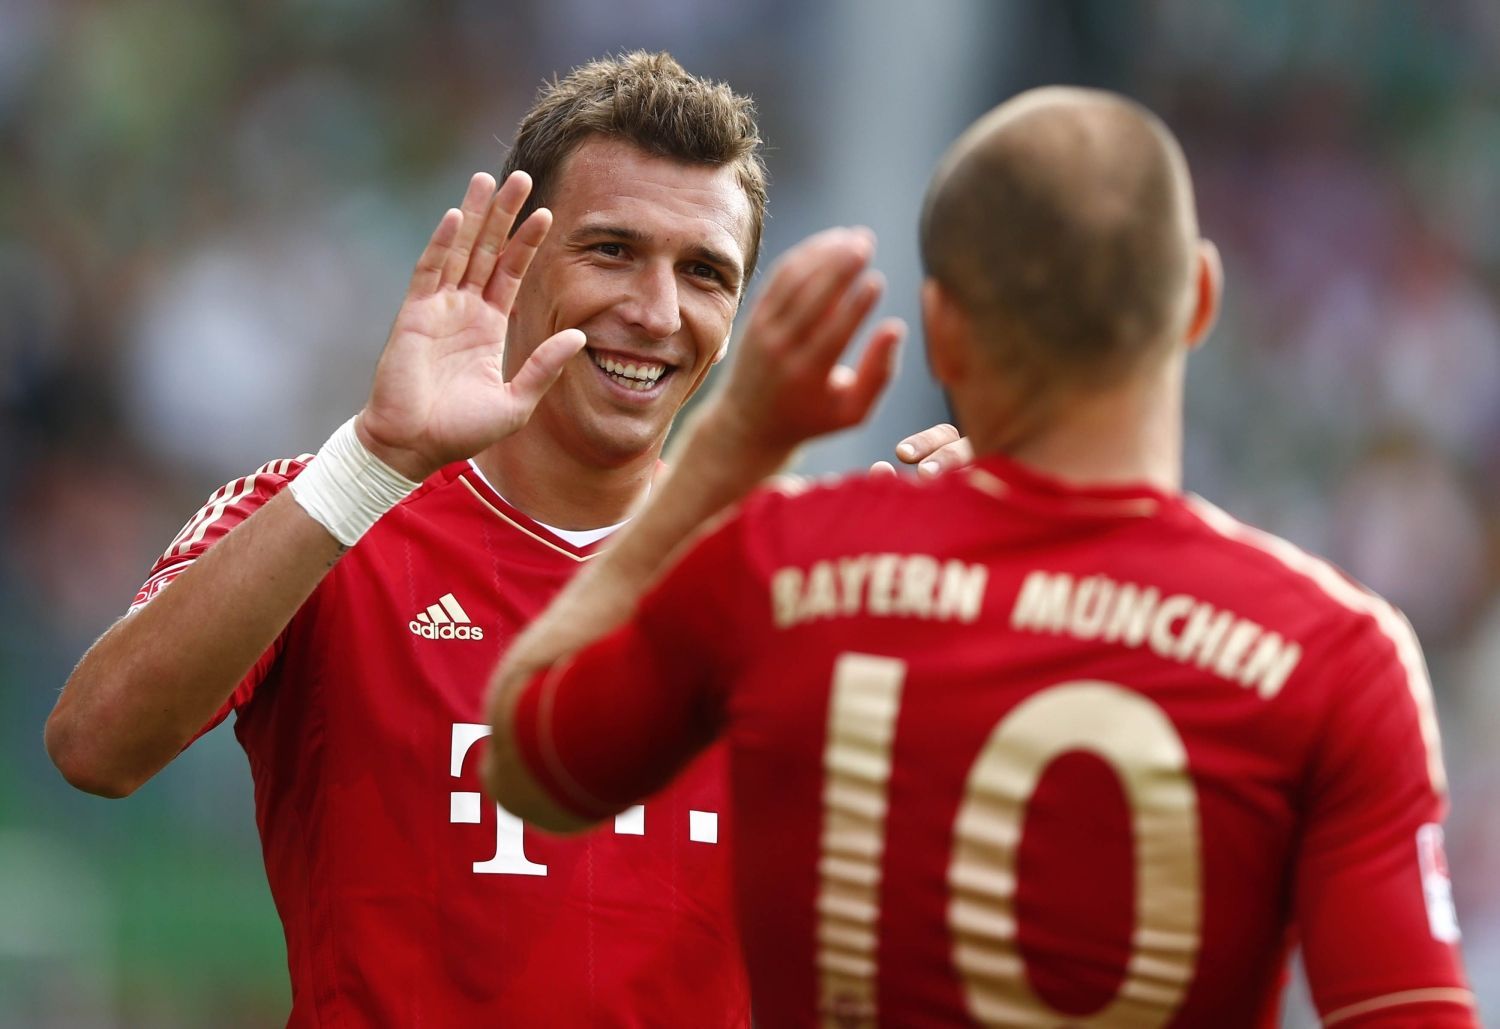 Fotbalista Mario Mandžukič z Bayernu Mnichov gratuluje ke gólu Arjenu Robbenovi v utkání německé Bundesligy 2012/13 s Furthem.